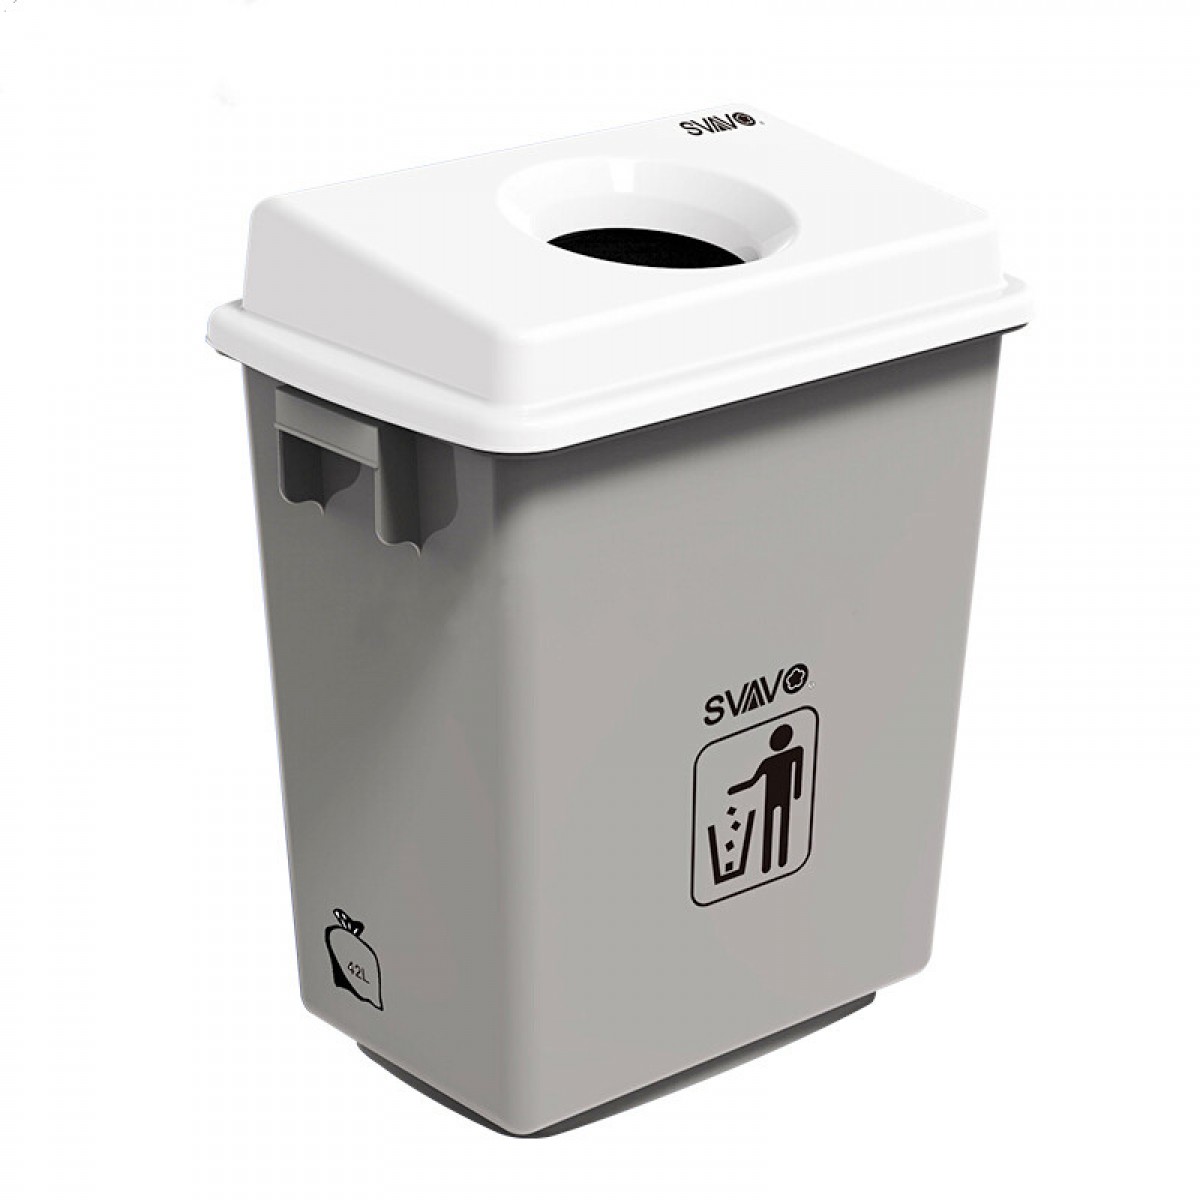 衛生間垃圾桶(PL-151042)